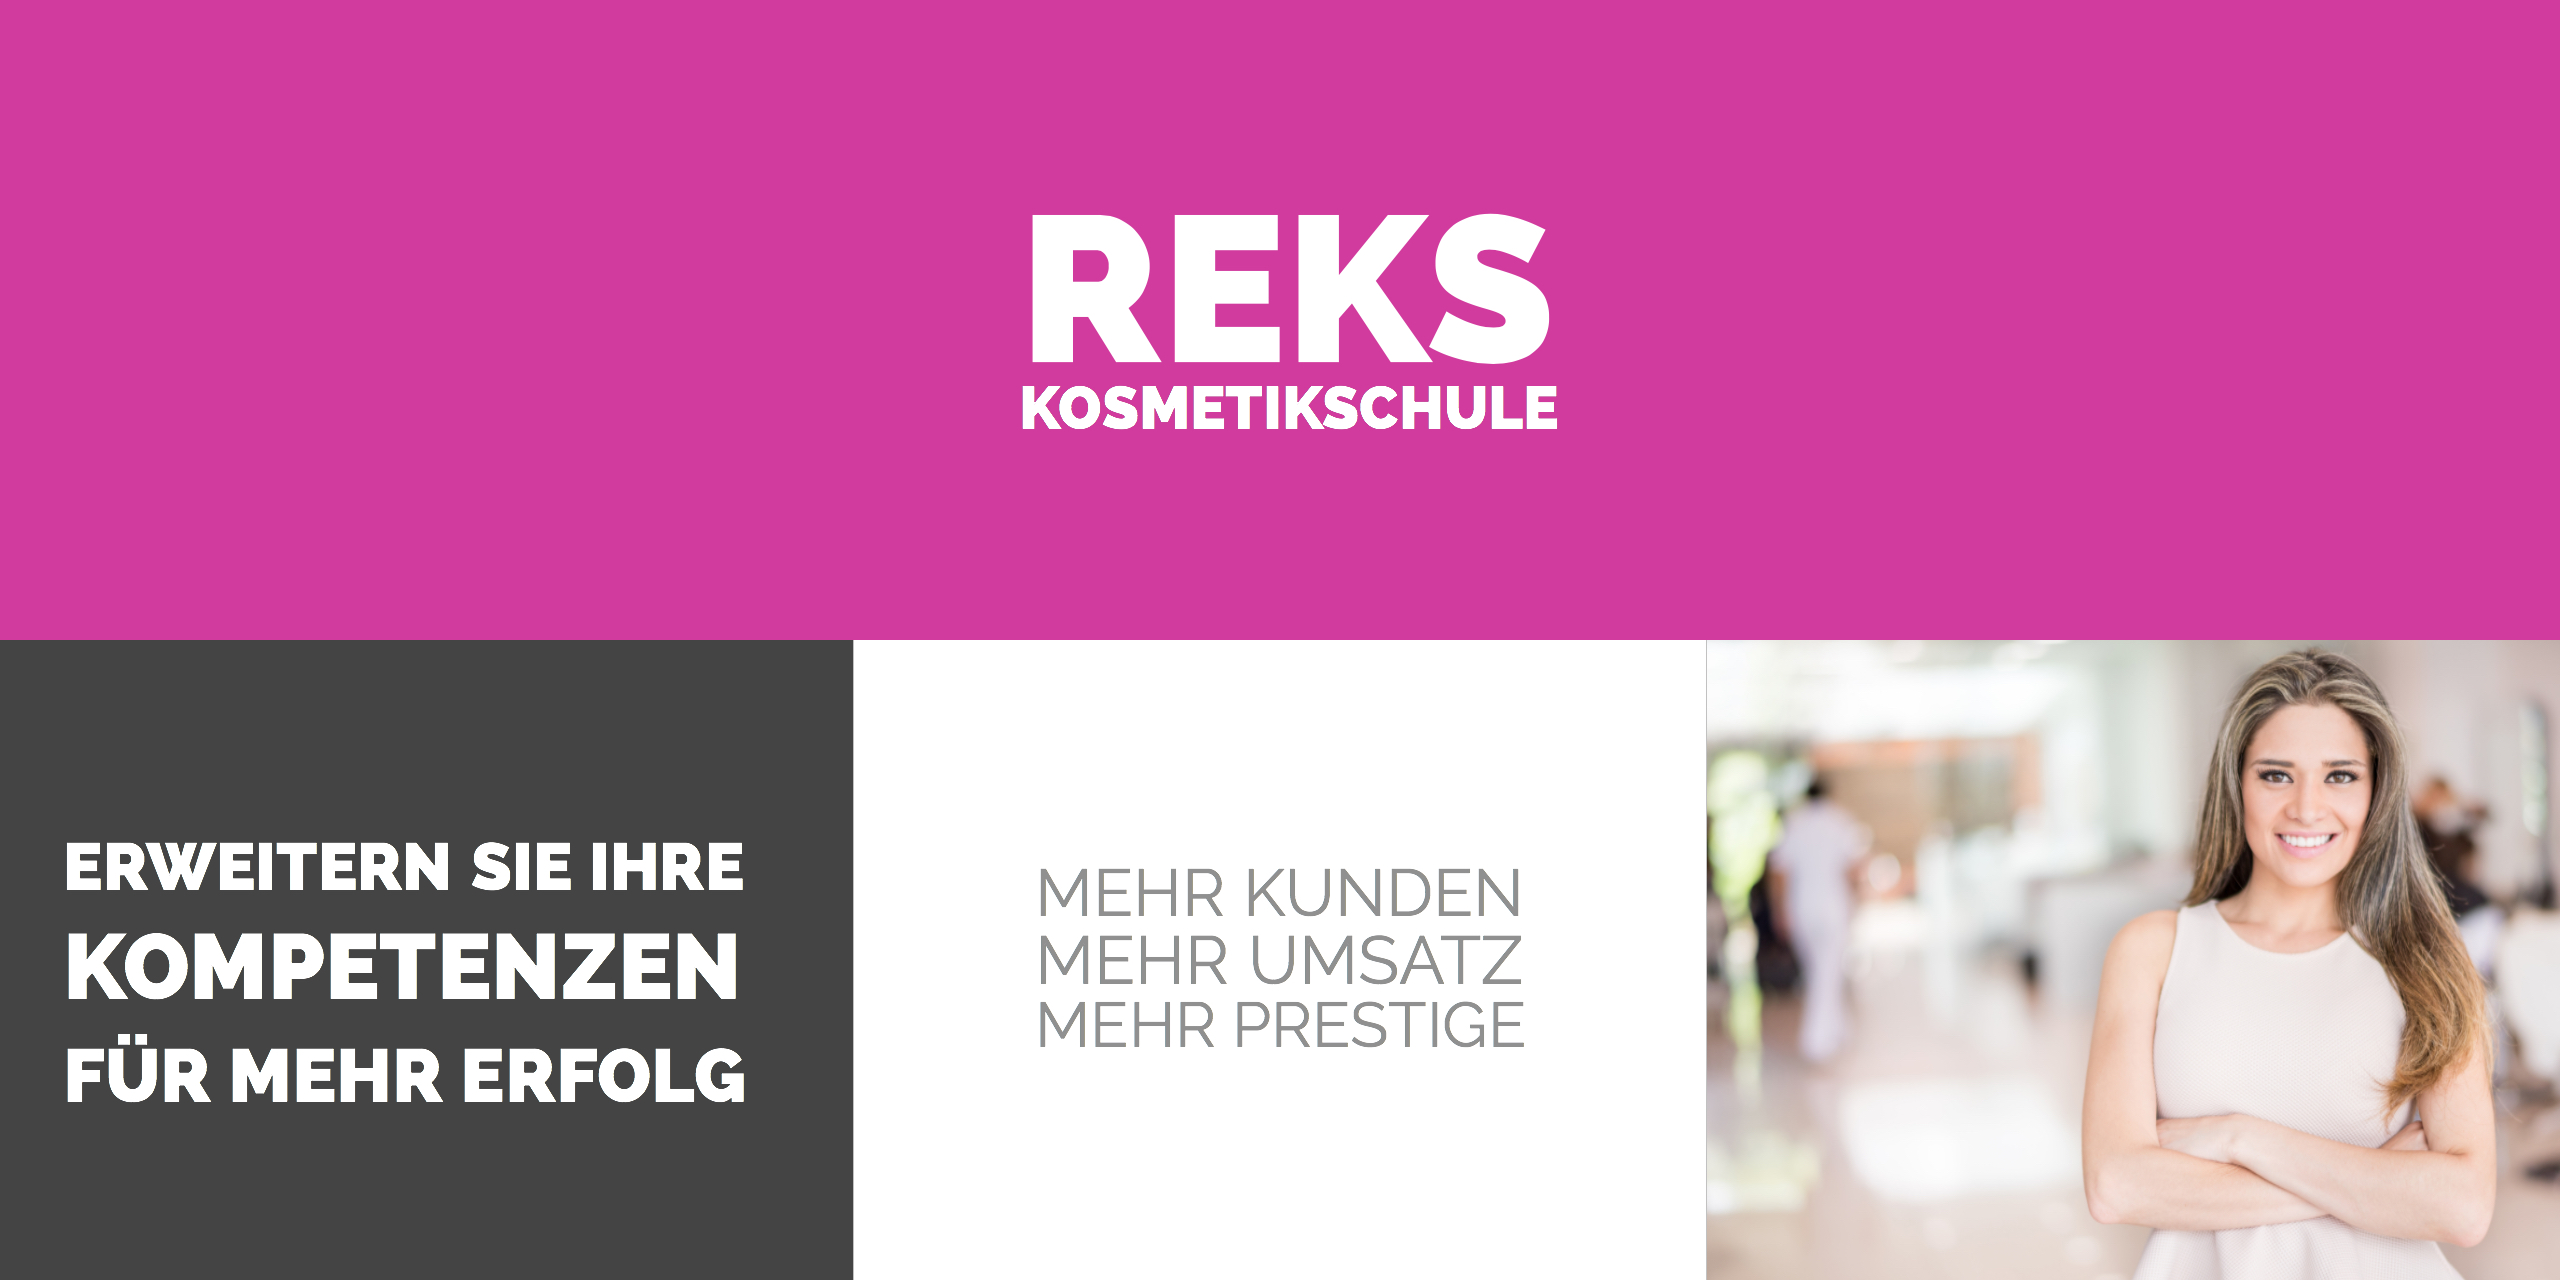 REKS Kosmetikschule in Berlin